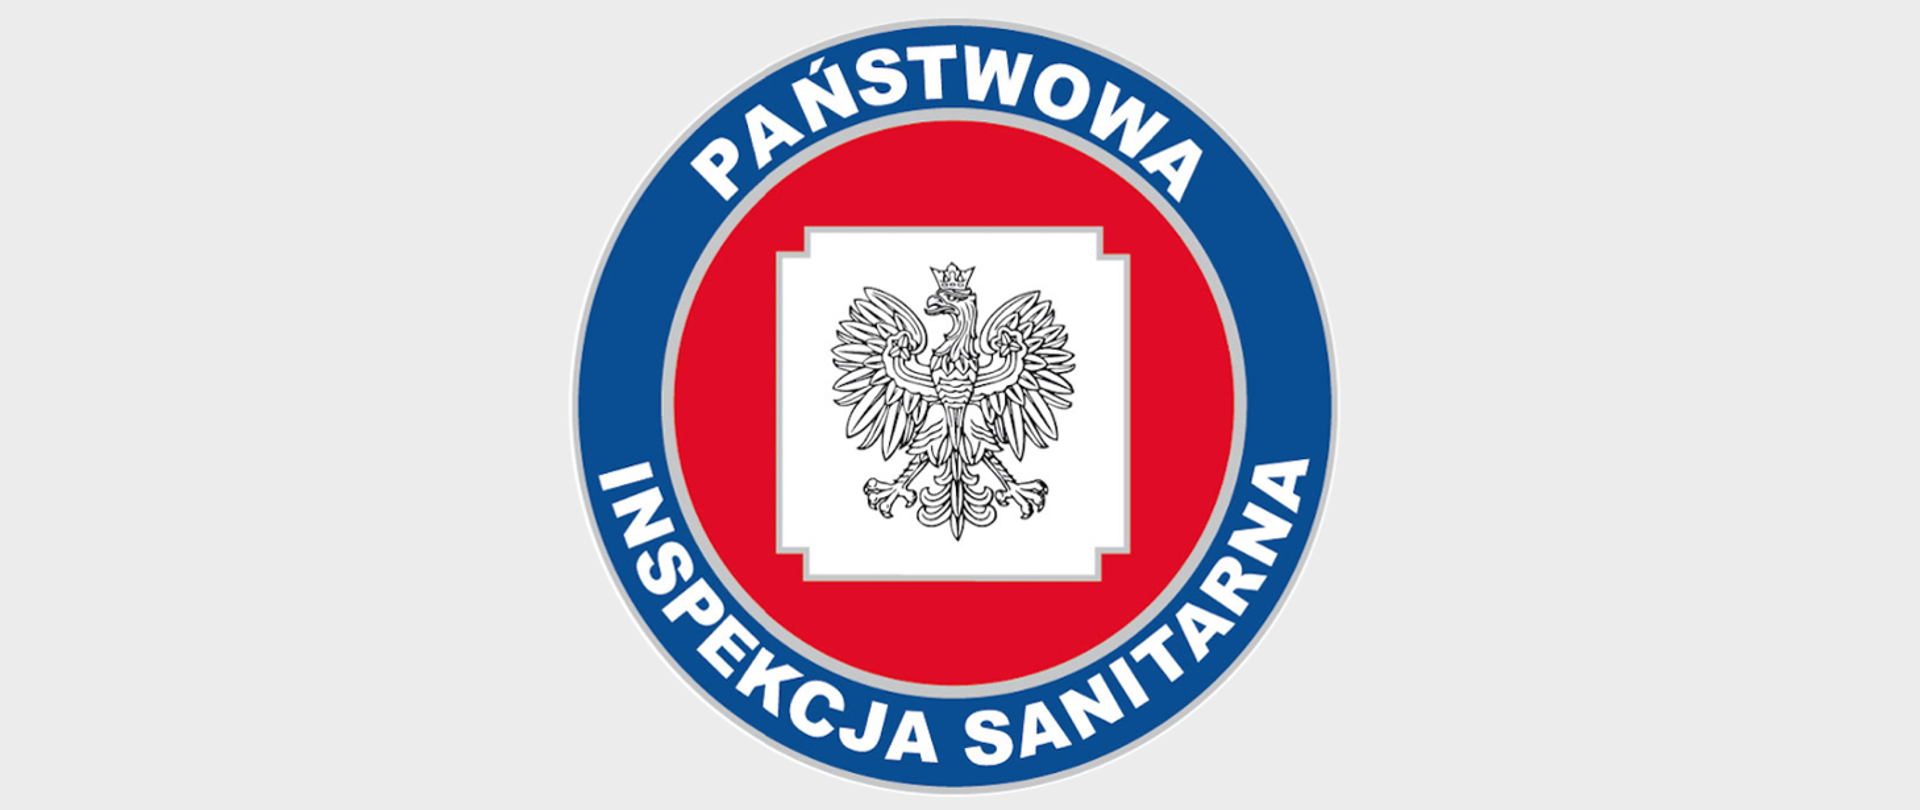 Logo Państwowej Inspekcji Sanitarnej - grafika przedstawia orła w koronie na białym tle, umieszczonym w czerwonym kole z niebieską oblamówką, na której widnieje napis "Państwowa Inspekcja Sanitarna"